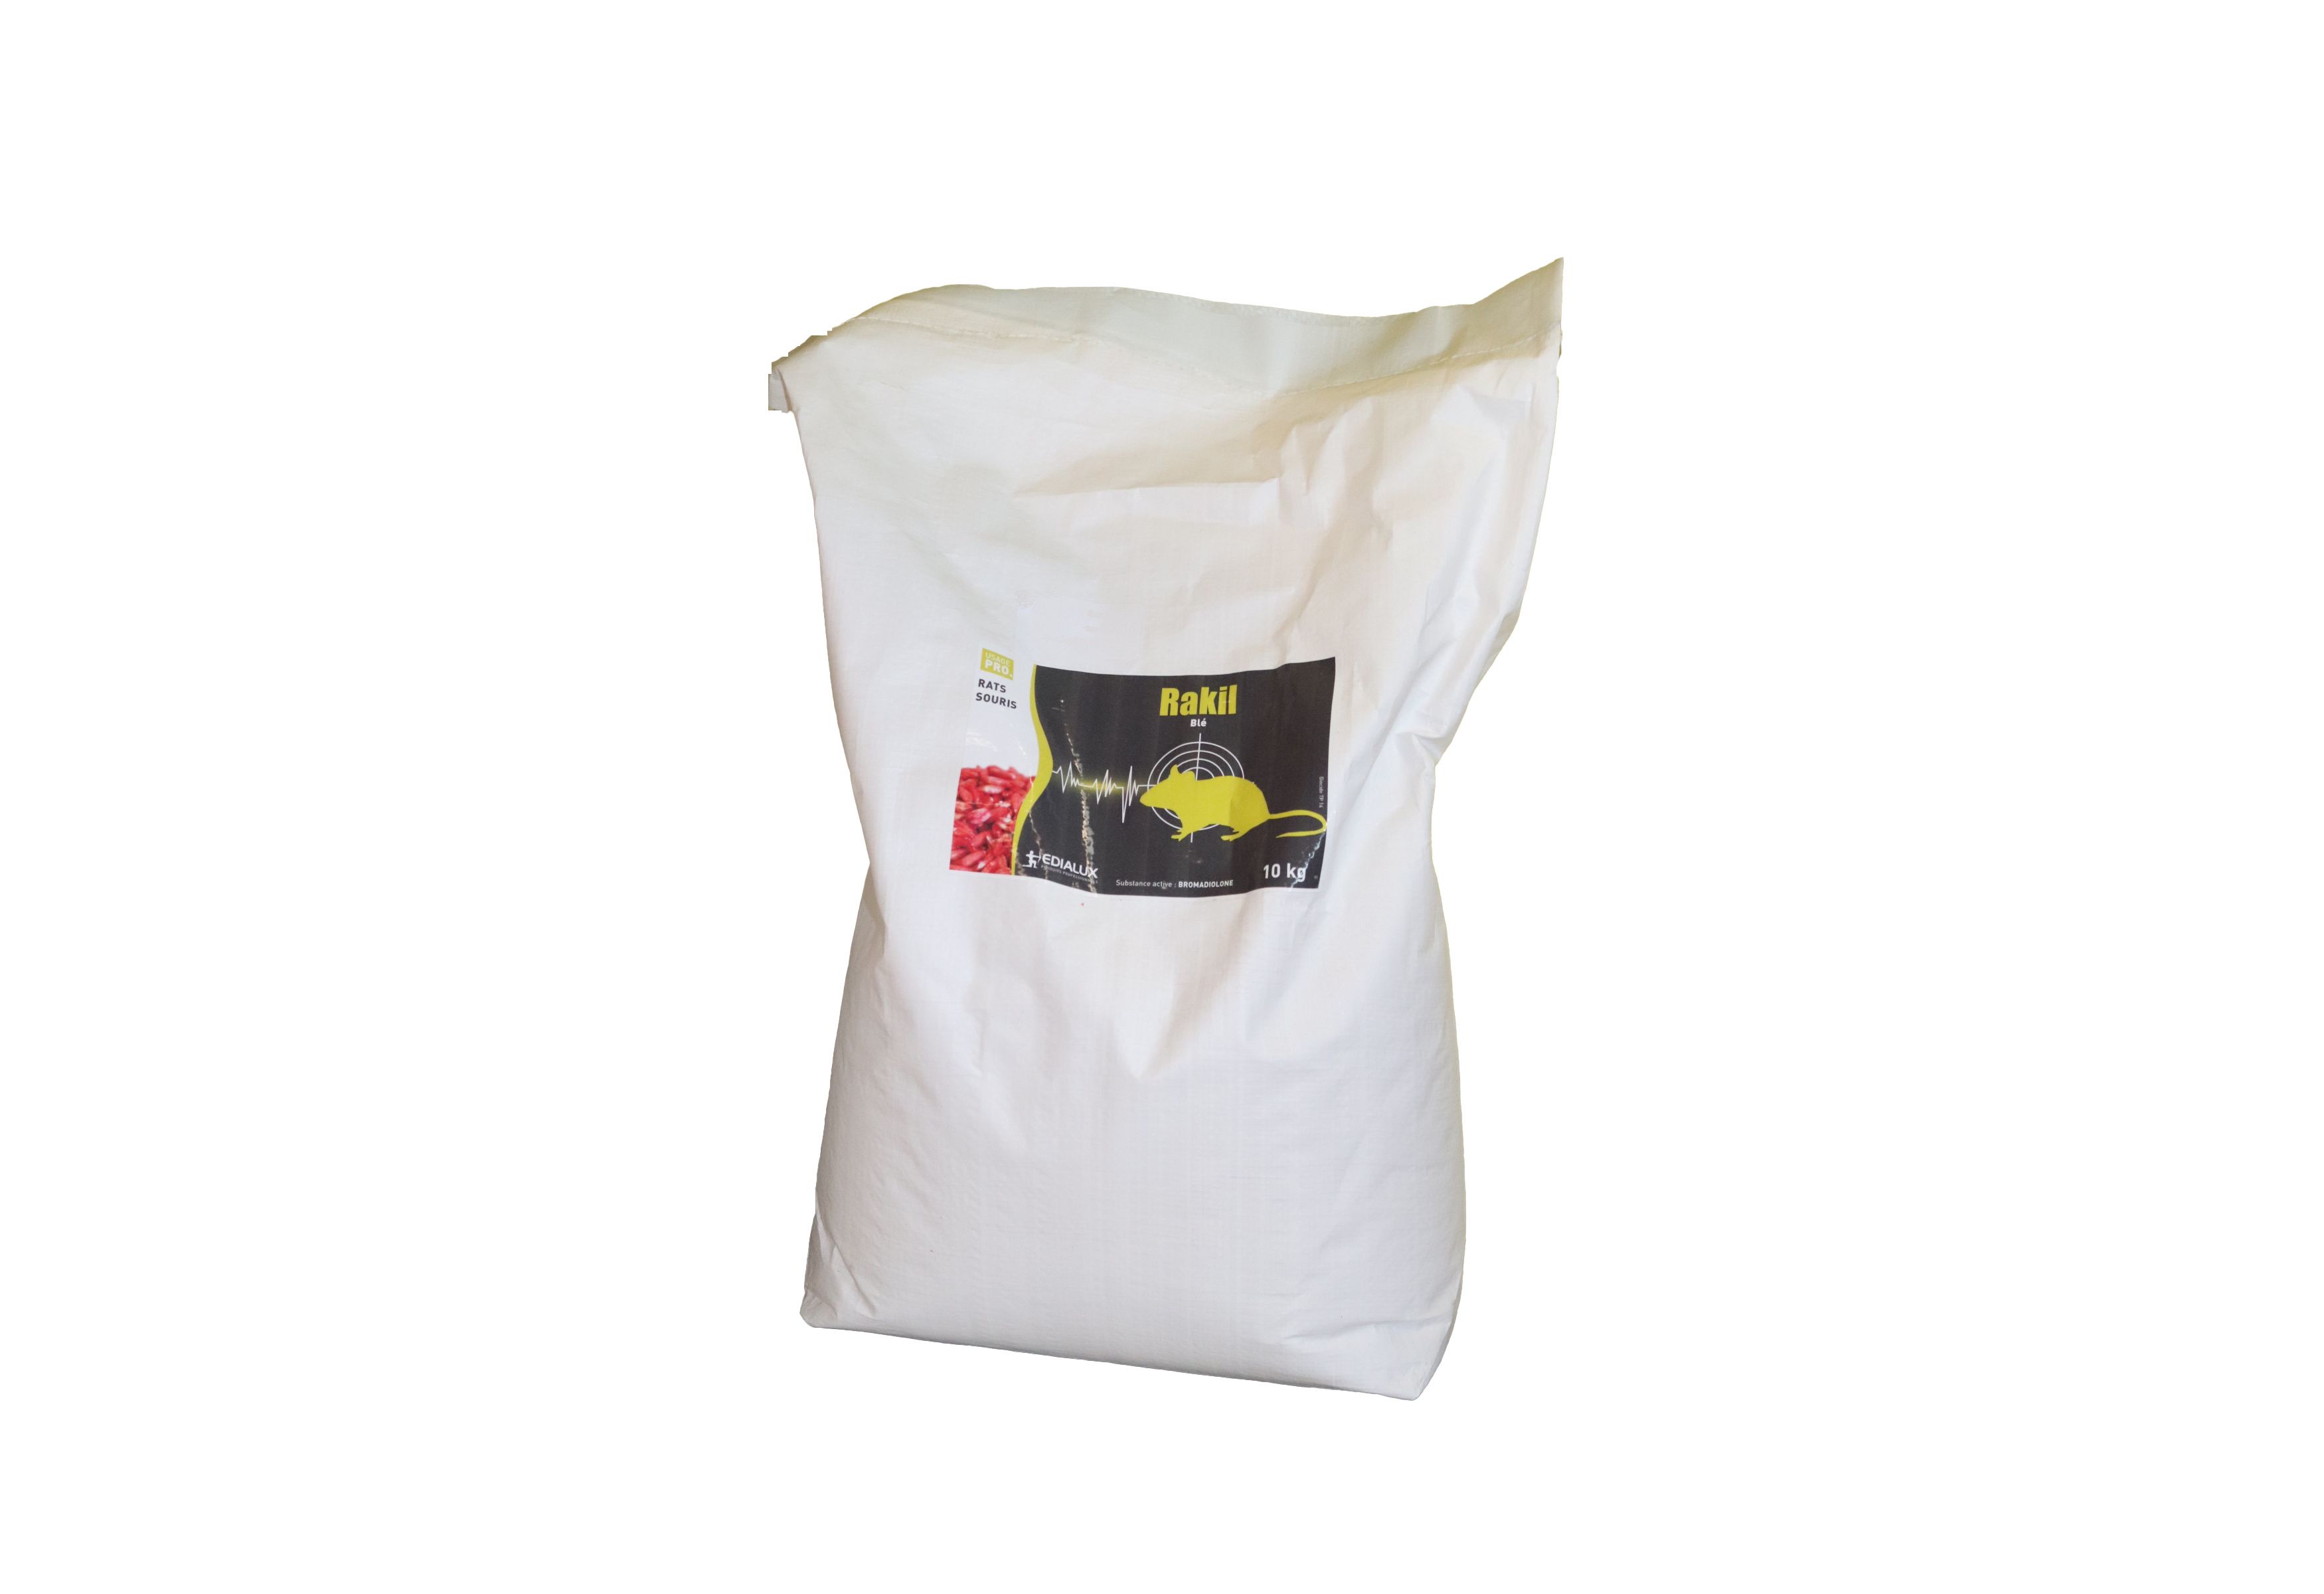 Rakil blé sac de 10kg vrac - Insecticides raticides et pièges pour